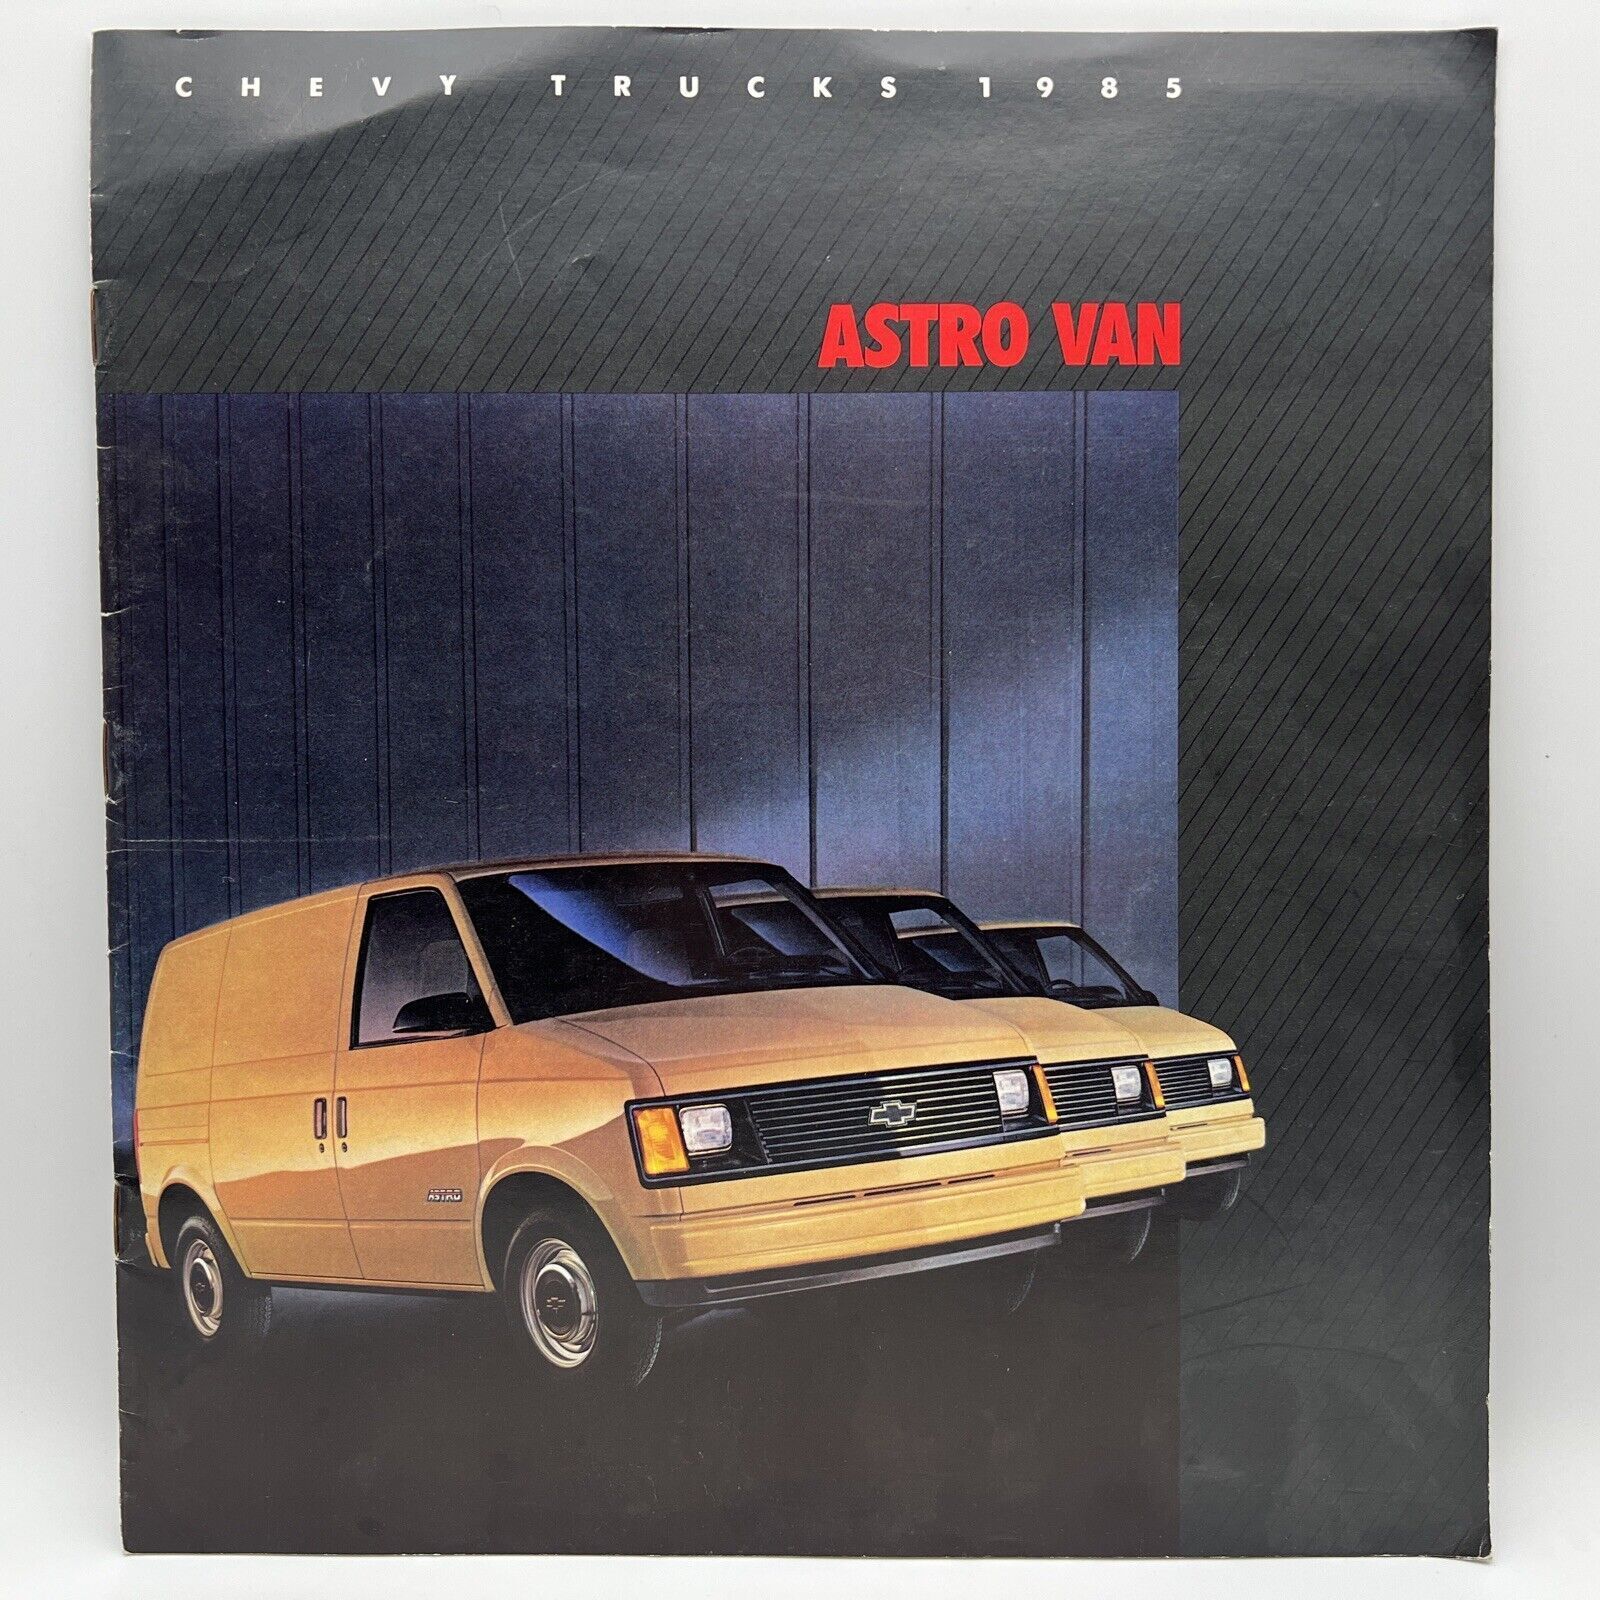 1985 CHEVY TRUCKS ASTRO VAN Chevrolet Dealer Sales Brochure Options Colors Specs